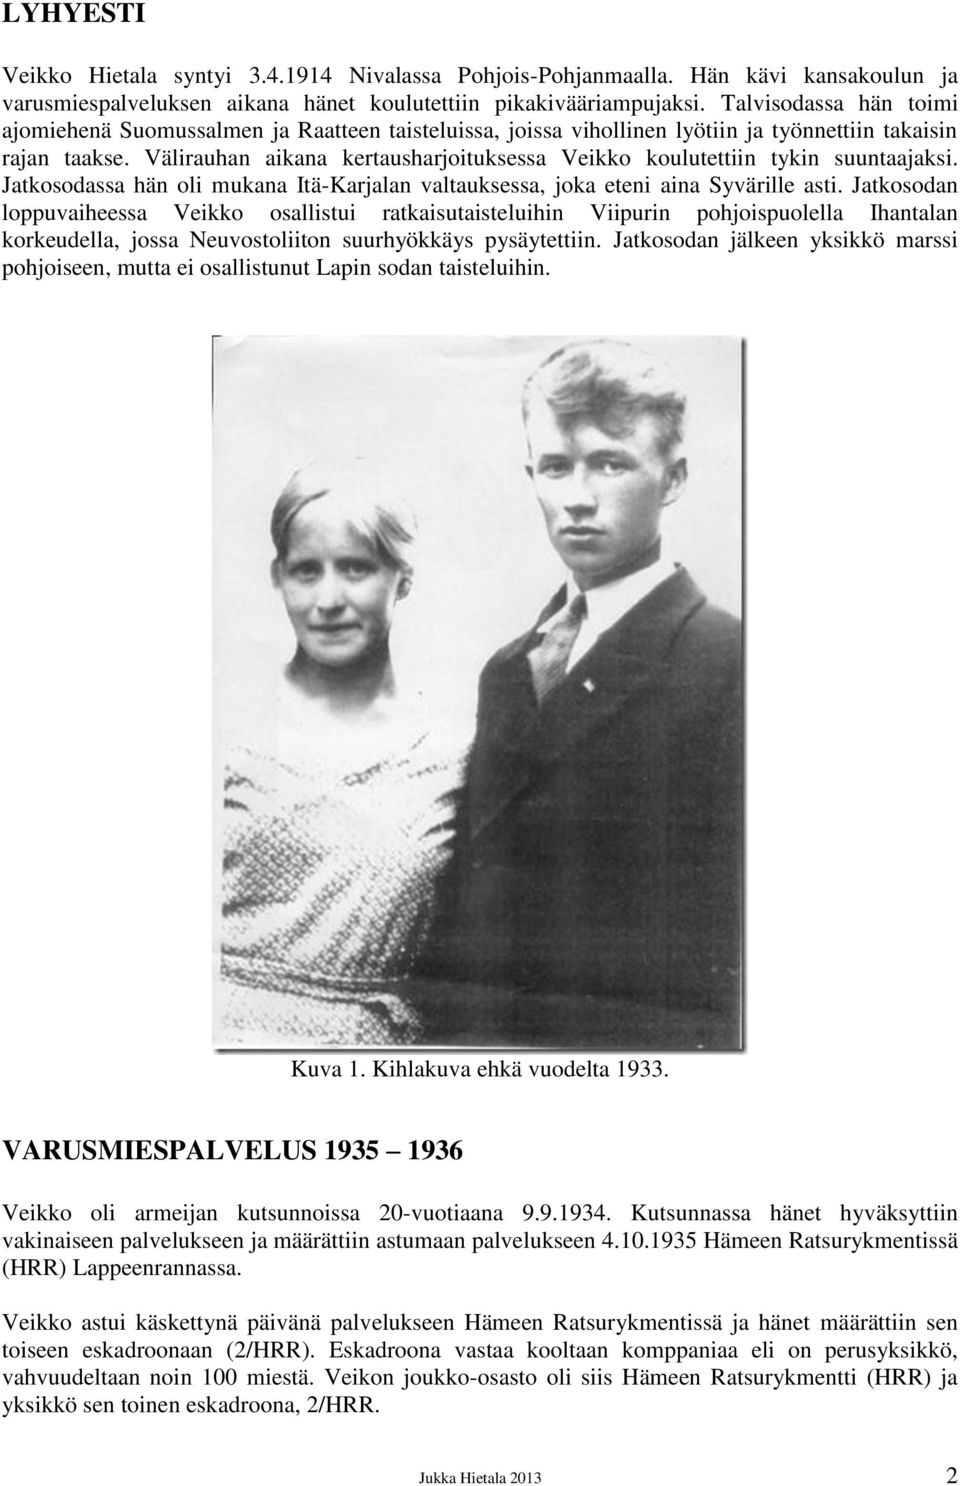 Välirauhan aikana kertausharjoituksessa Veikko koulutettiin tykin suuntaajaksi. Jatkosodassa hän oli mukana Itä-Karjalan valtauksessa, joka eteni aina Syvärille asti.